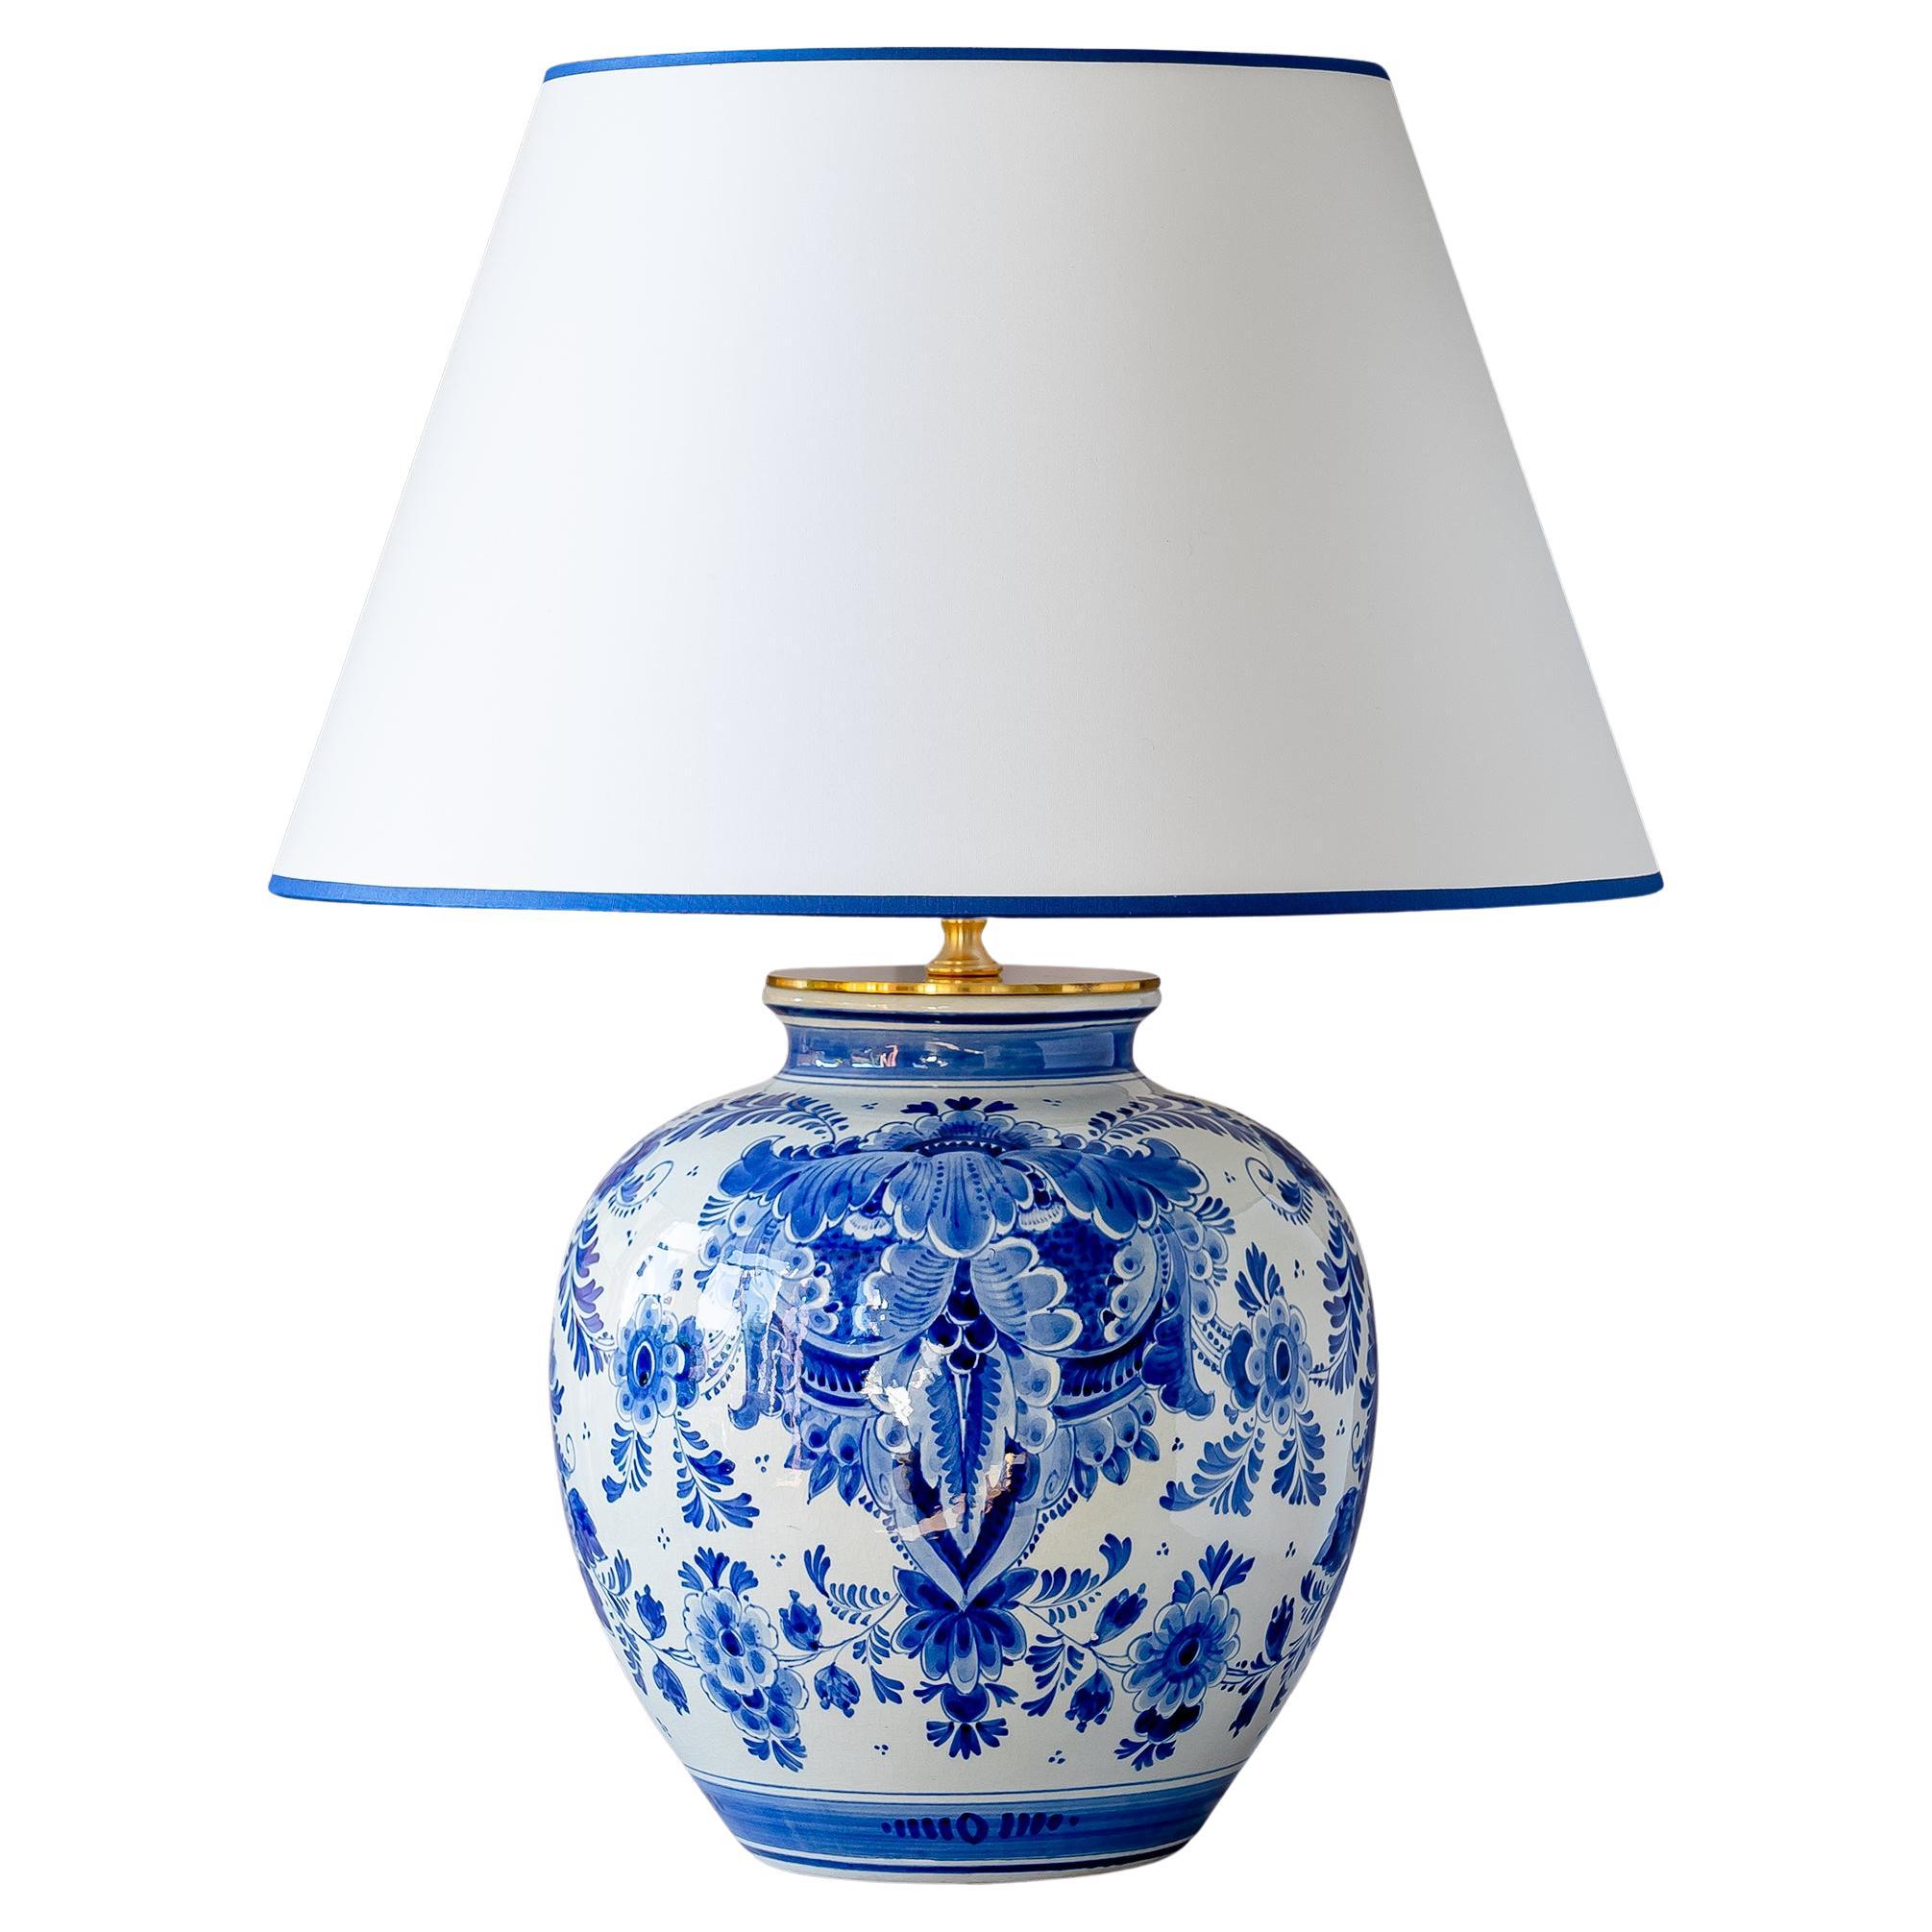 Royal Delft Blue 1974 Vase Tischlampe, Lampenschirm aus weißem Satin mit kobaltblauer Zierleiste